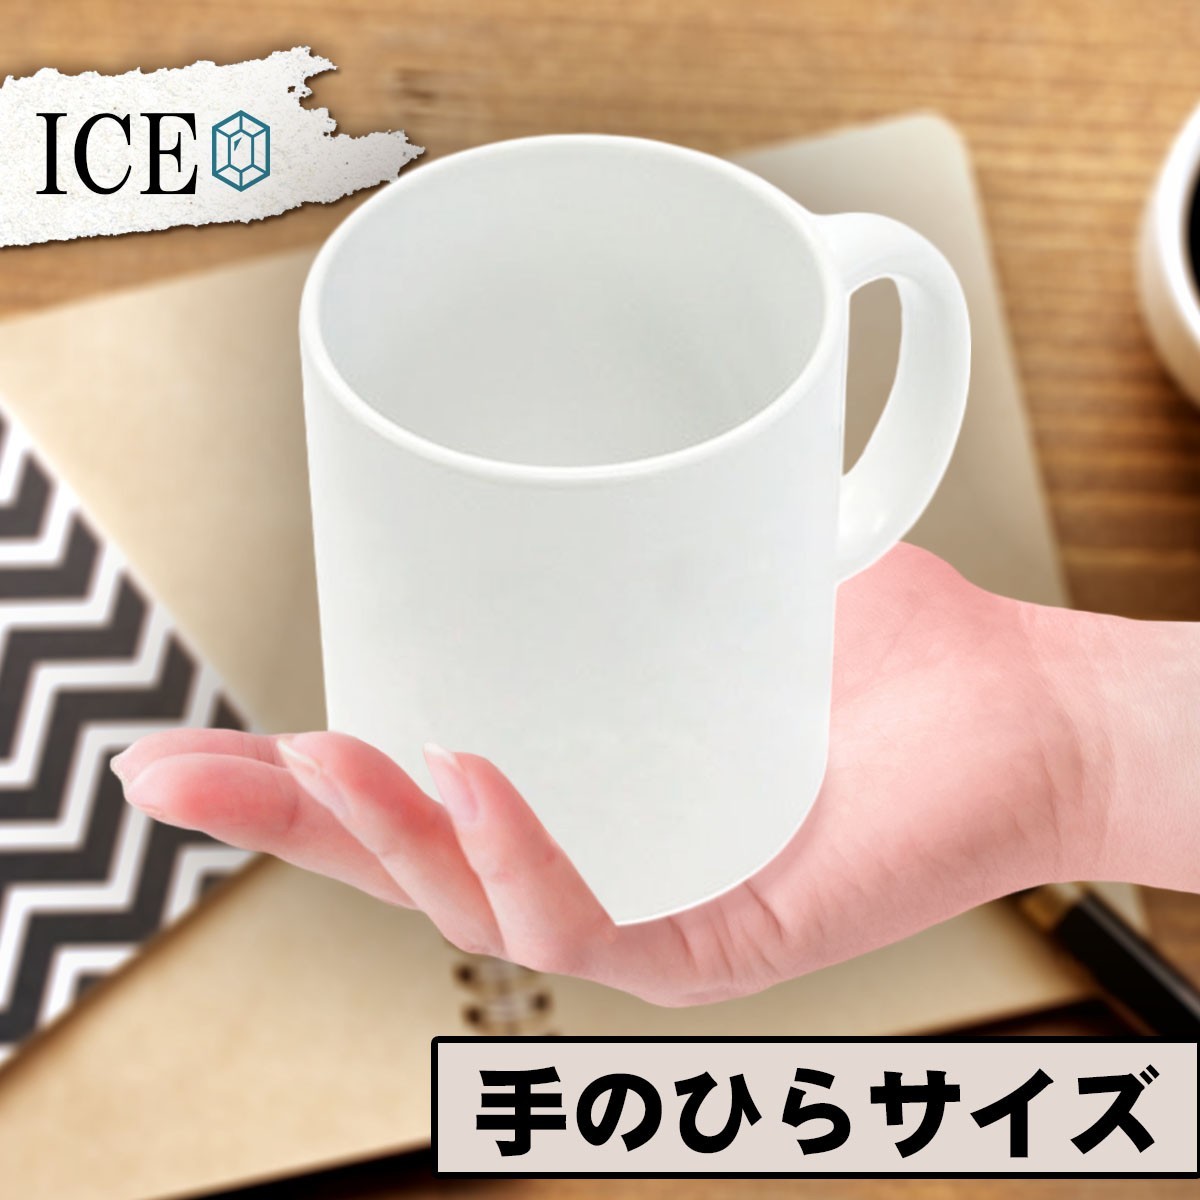 亥 おもしろ マグカップ コップ イノシシ いのしし 干支 陶器 可愛い かわいい 白 シンプル かわいい カッコイイ シュール 面白い ジョーク_画像2